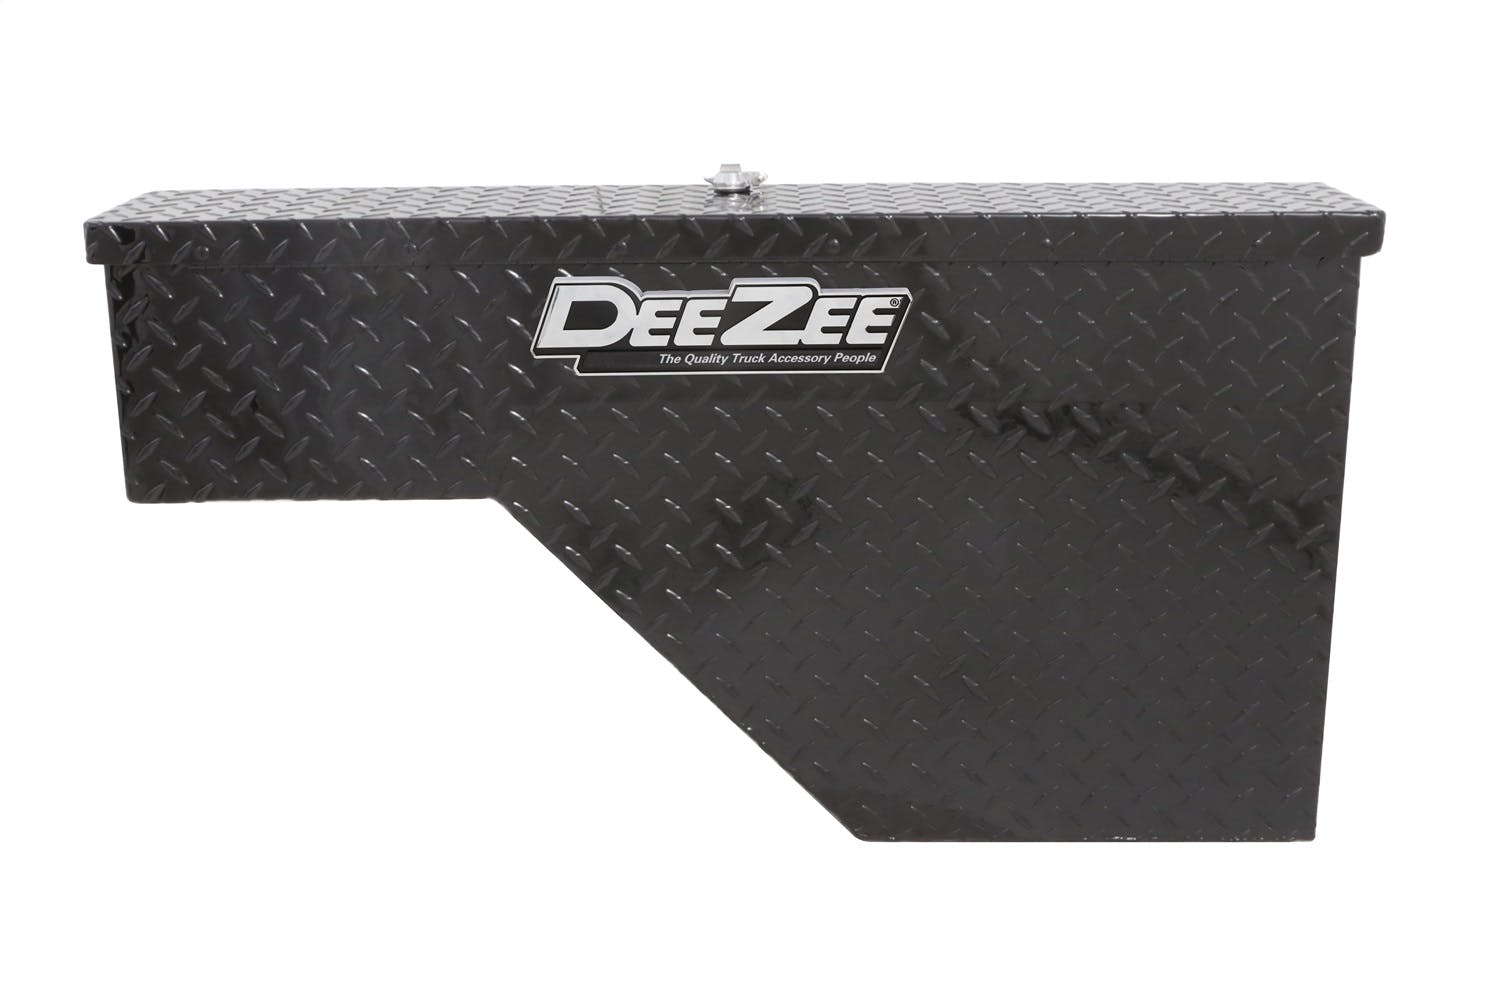 Dee Zee DZ94B Tool Box - Specialty Wheel Well Black BT